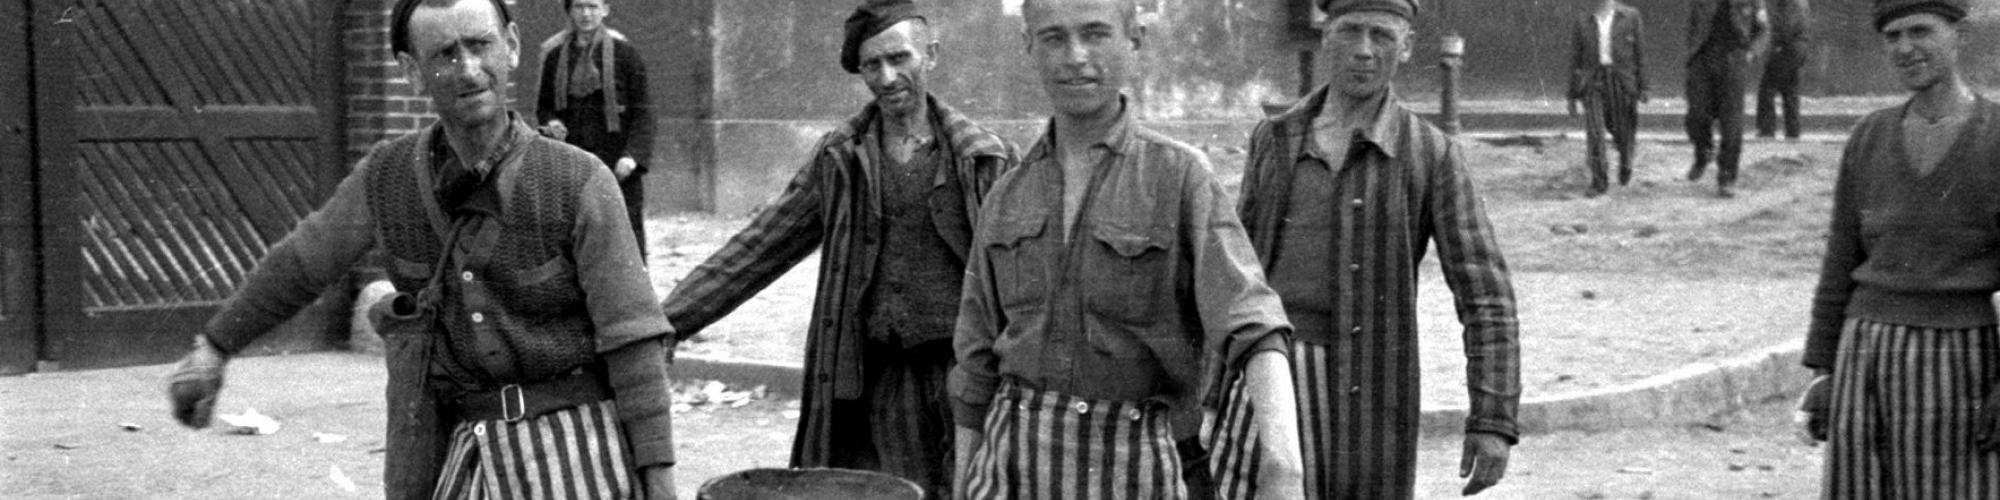 Foto Raphaël Algoet, Buchenwald april 1945 © CegeSoma/Rijksarchief